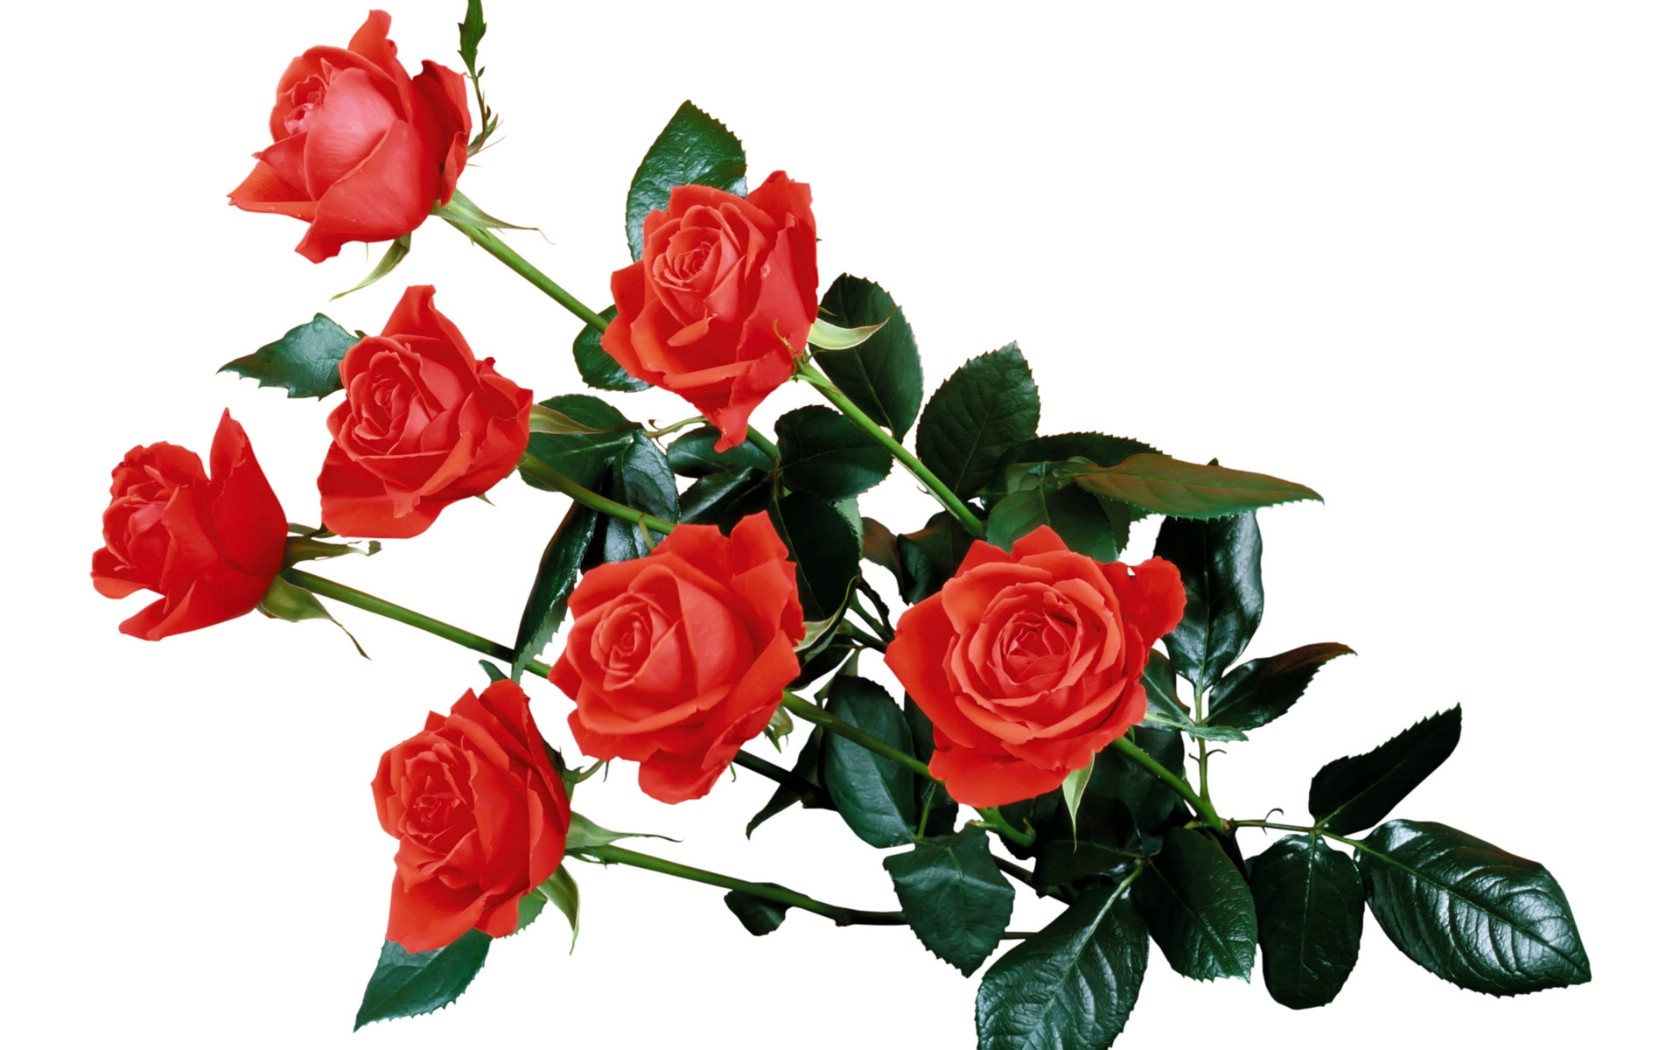 壁纸1680x1050玫瑰写真 3 8壁纸 玫瑰写真壁纸 玫瑰写真图片 玫瑰写真素材 花卉壁纸 花卉图库 花卉图片素材桌面壁纸